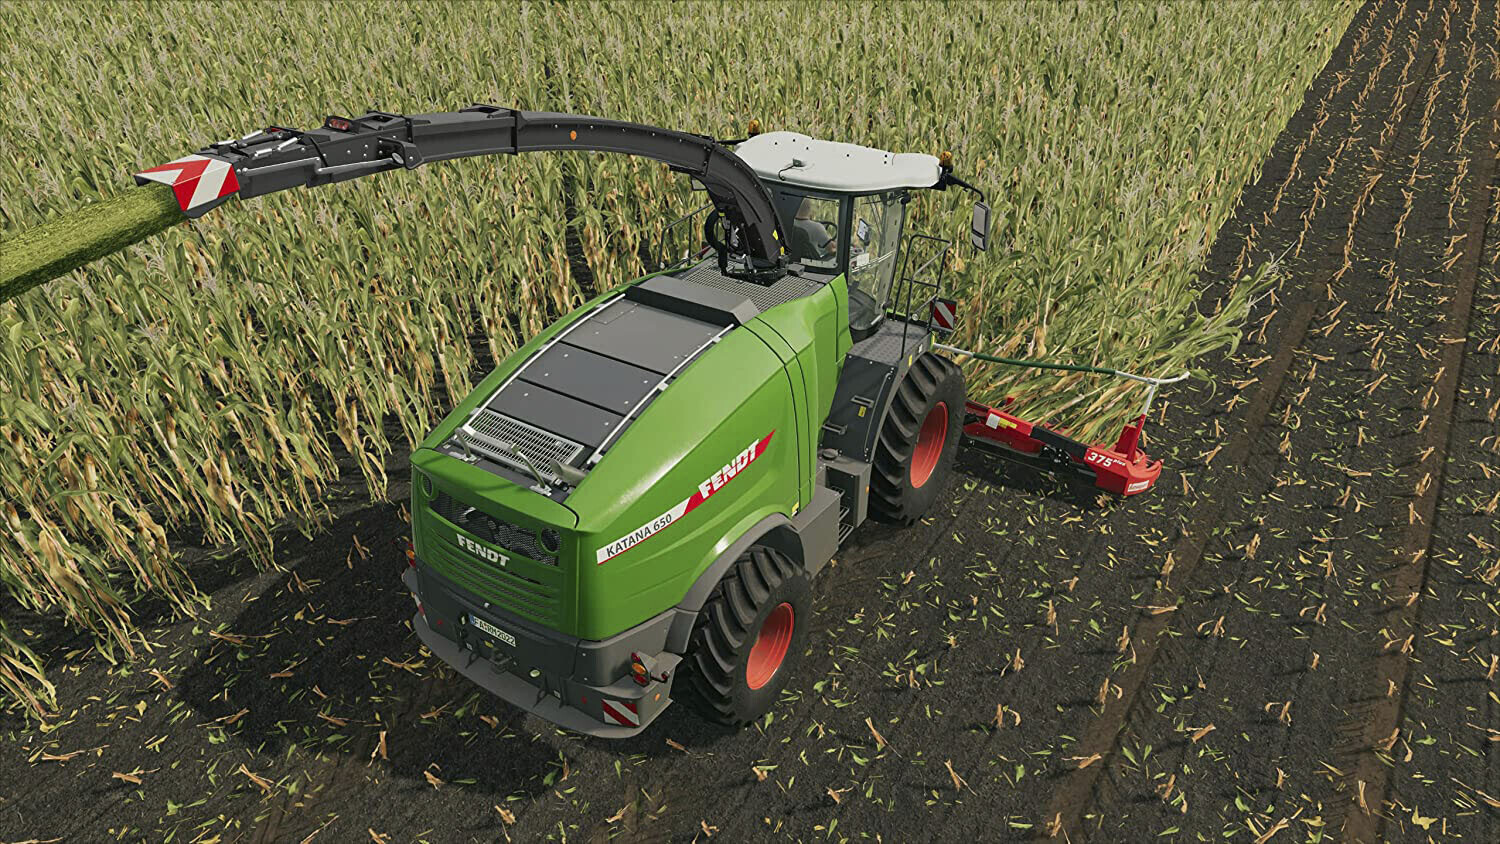 Farming Simulator 22 (PS4) precio más barato: 21,49€